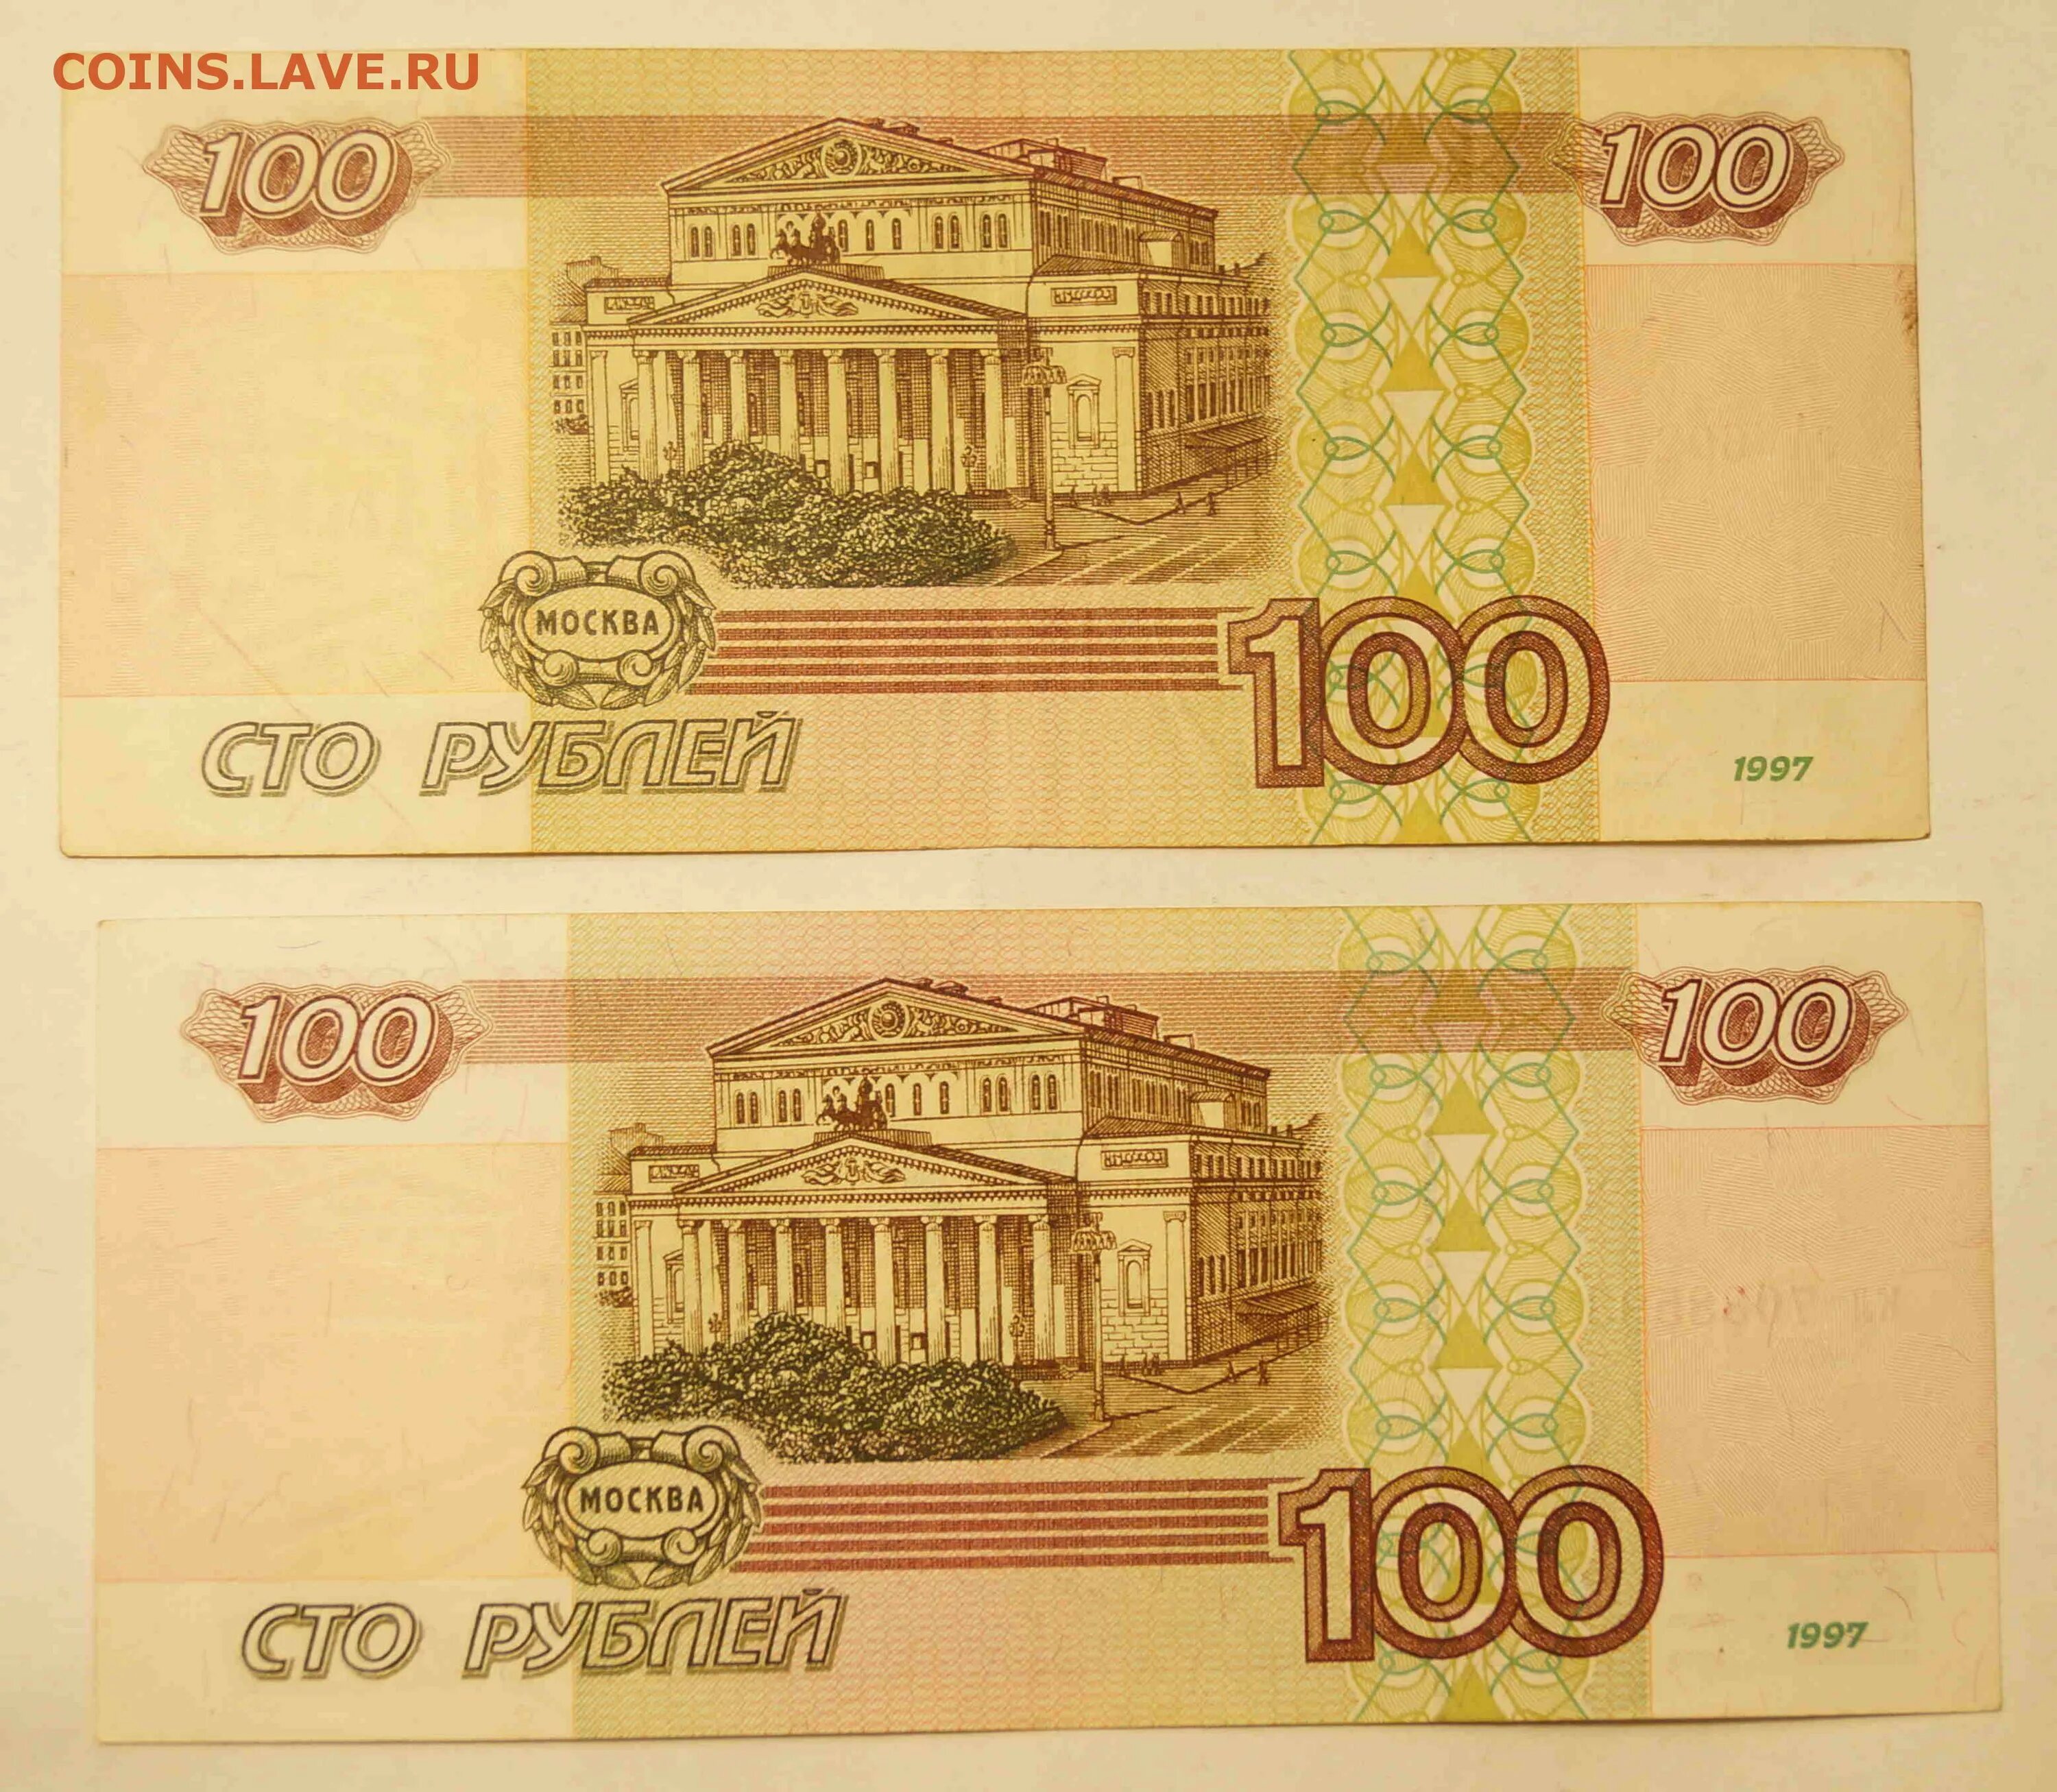 100000 1000 1. Купюра 100 тысяч рублей 1995. СТО тысяч рублей купюра. 100 000 Рублей 1995 года. Купюра 100.000 руб.